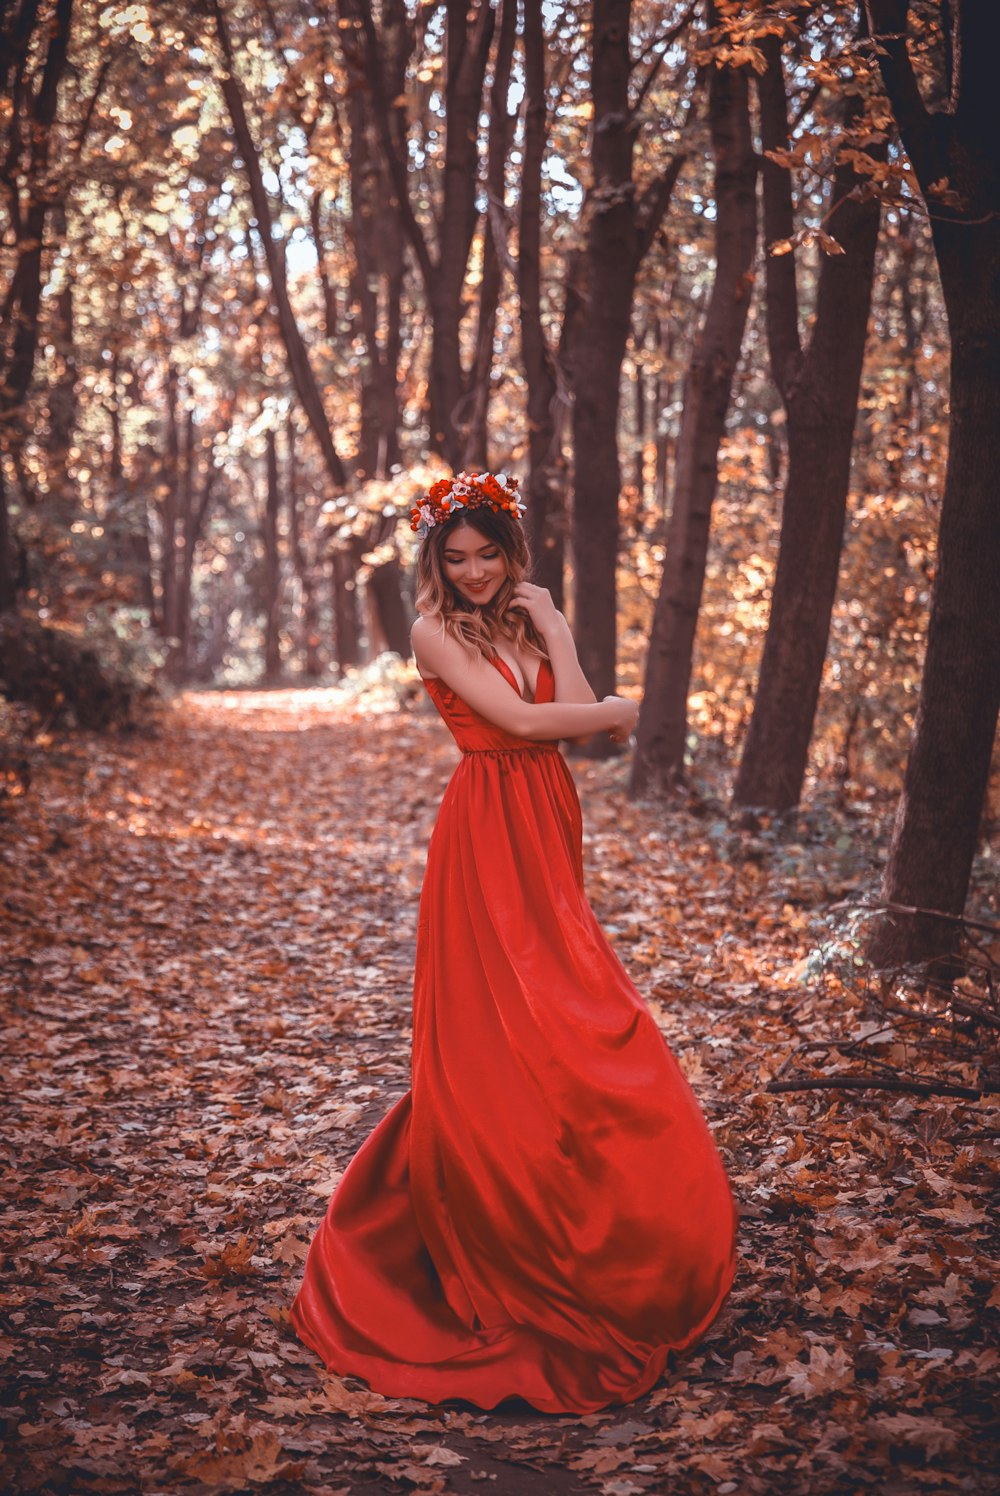 木々に囲まれた赤いドレスの女性